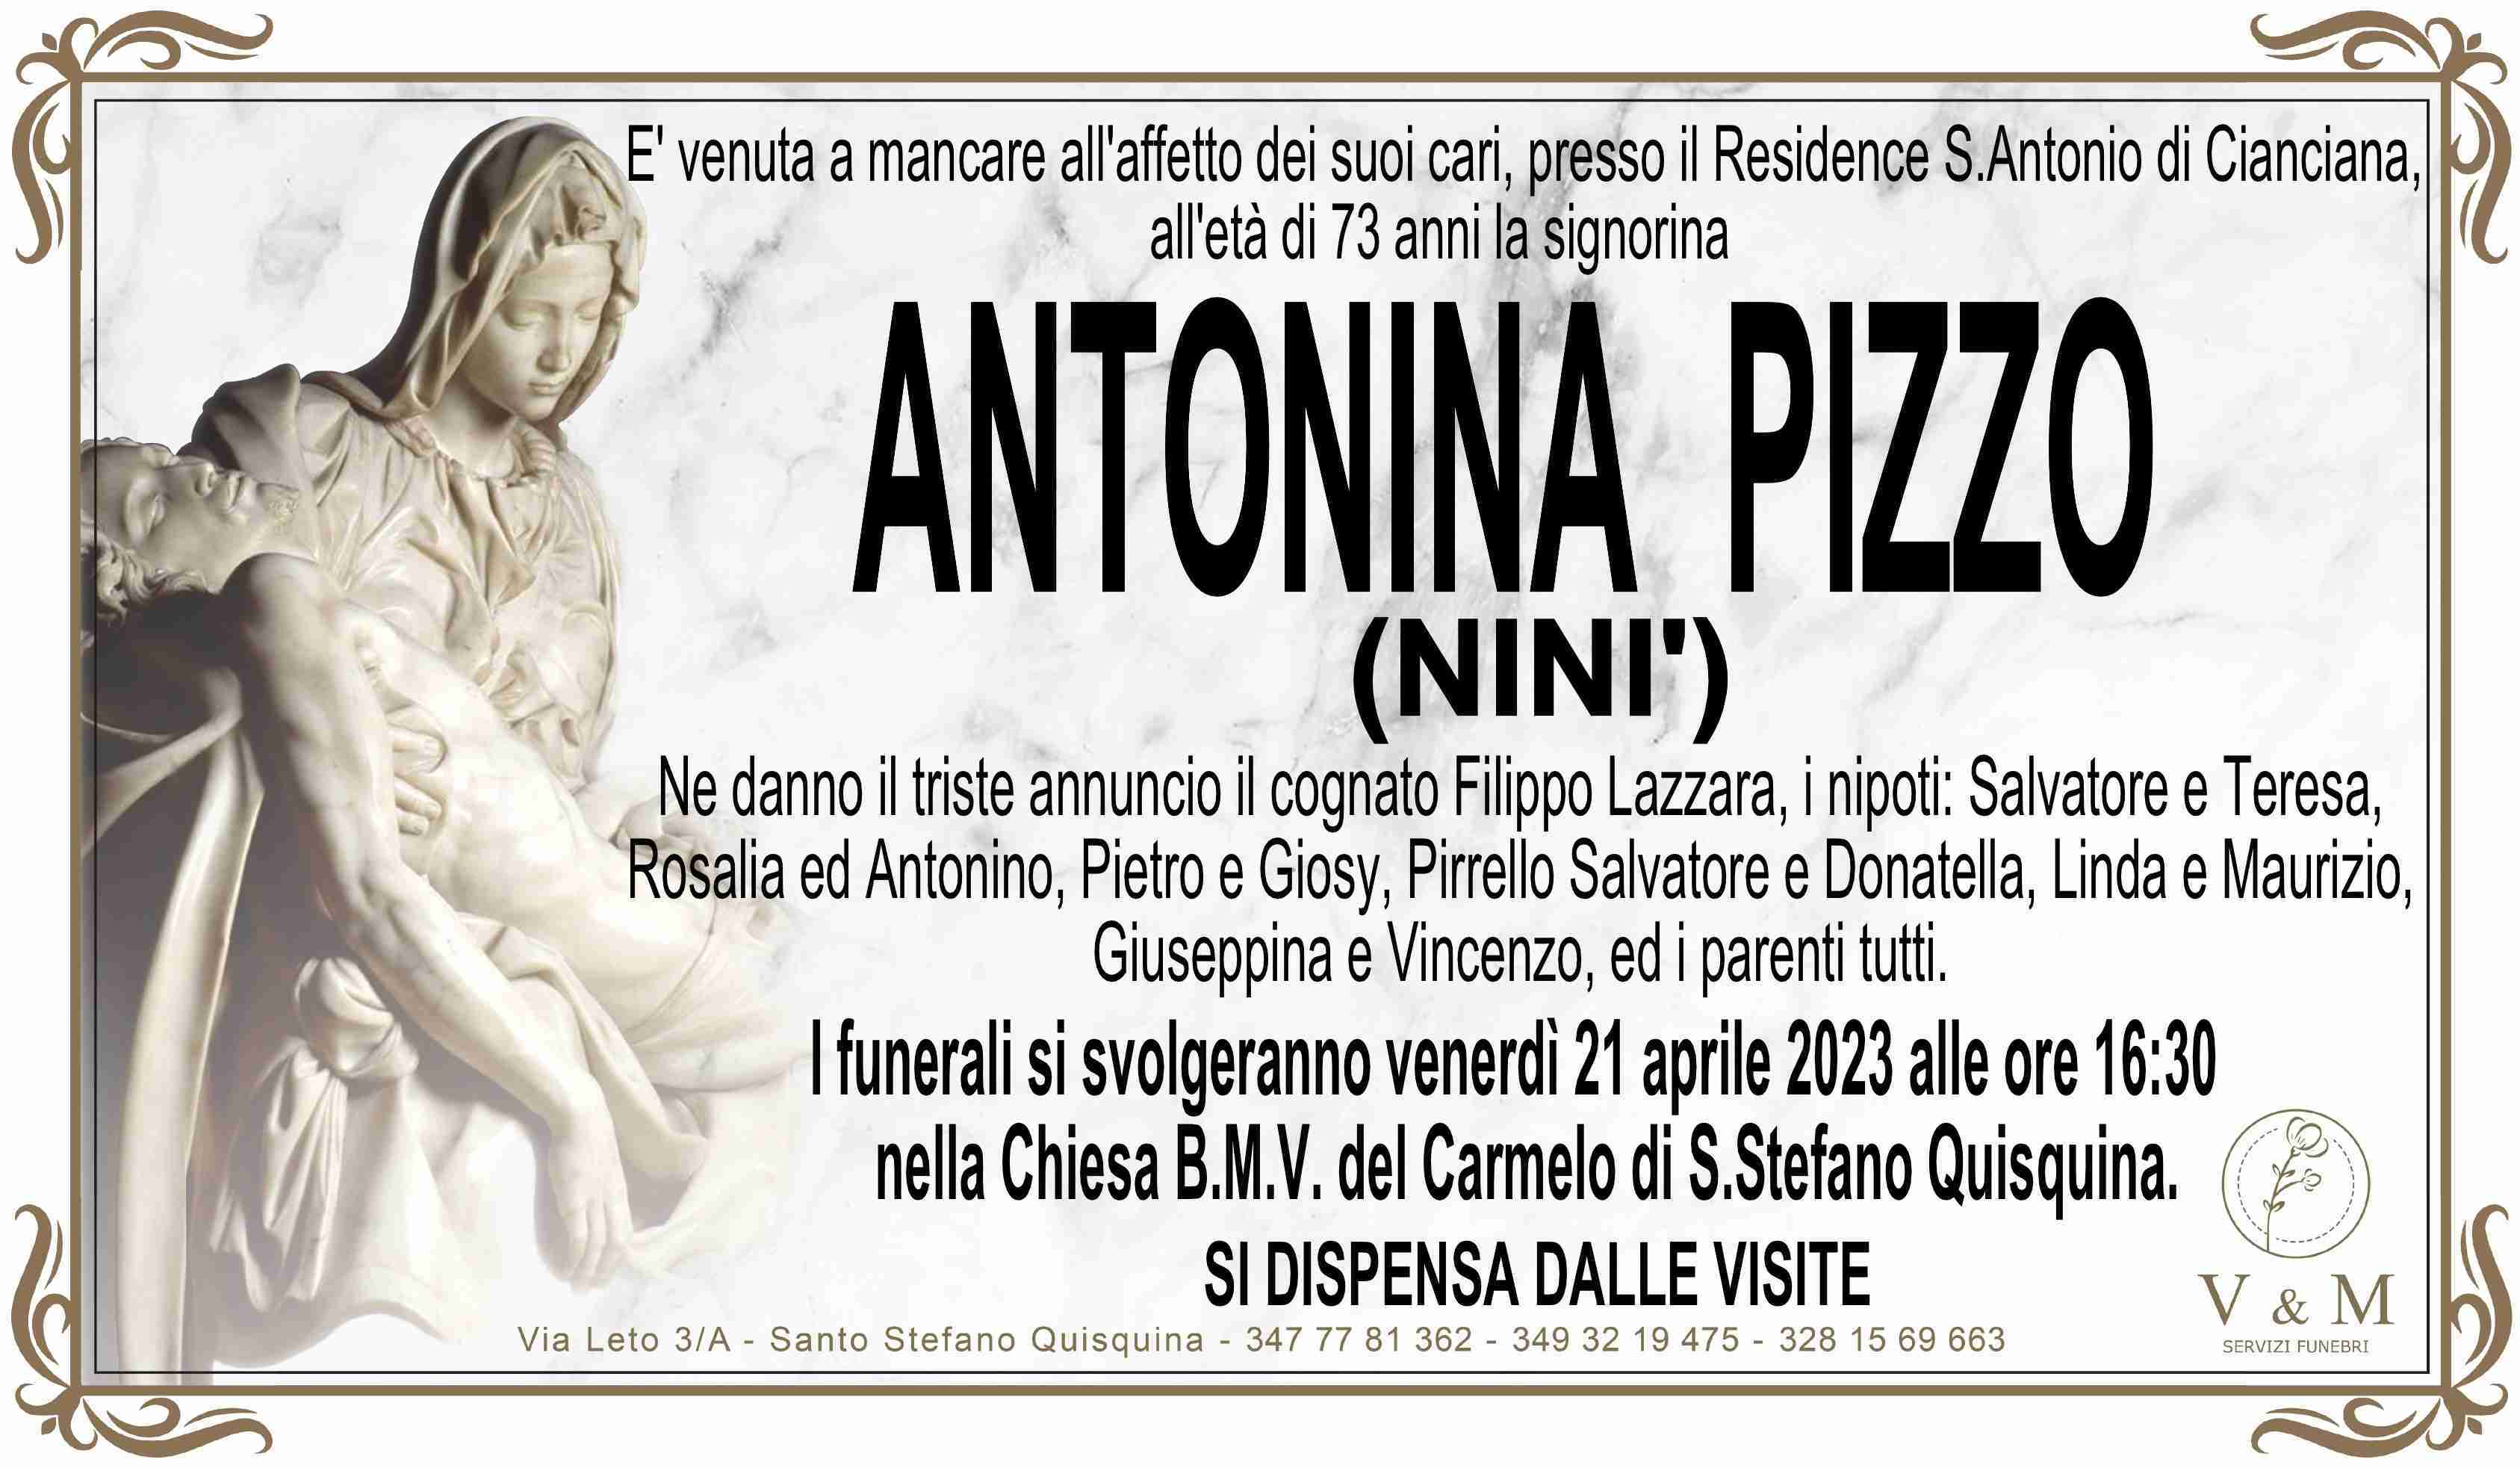 Antonina Pizzo